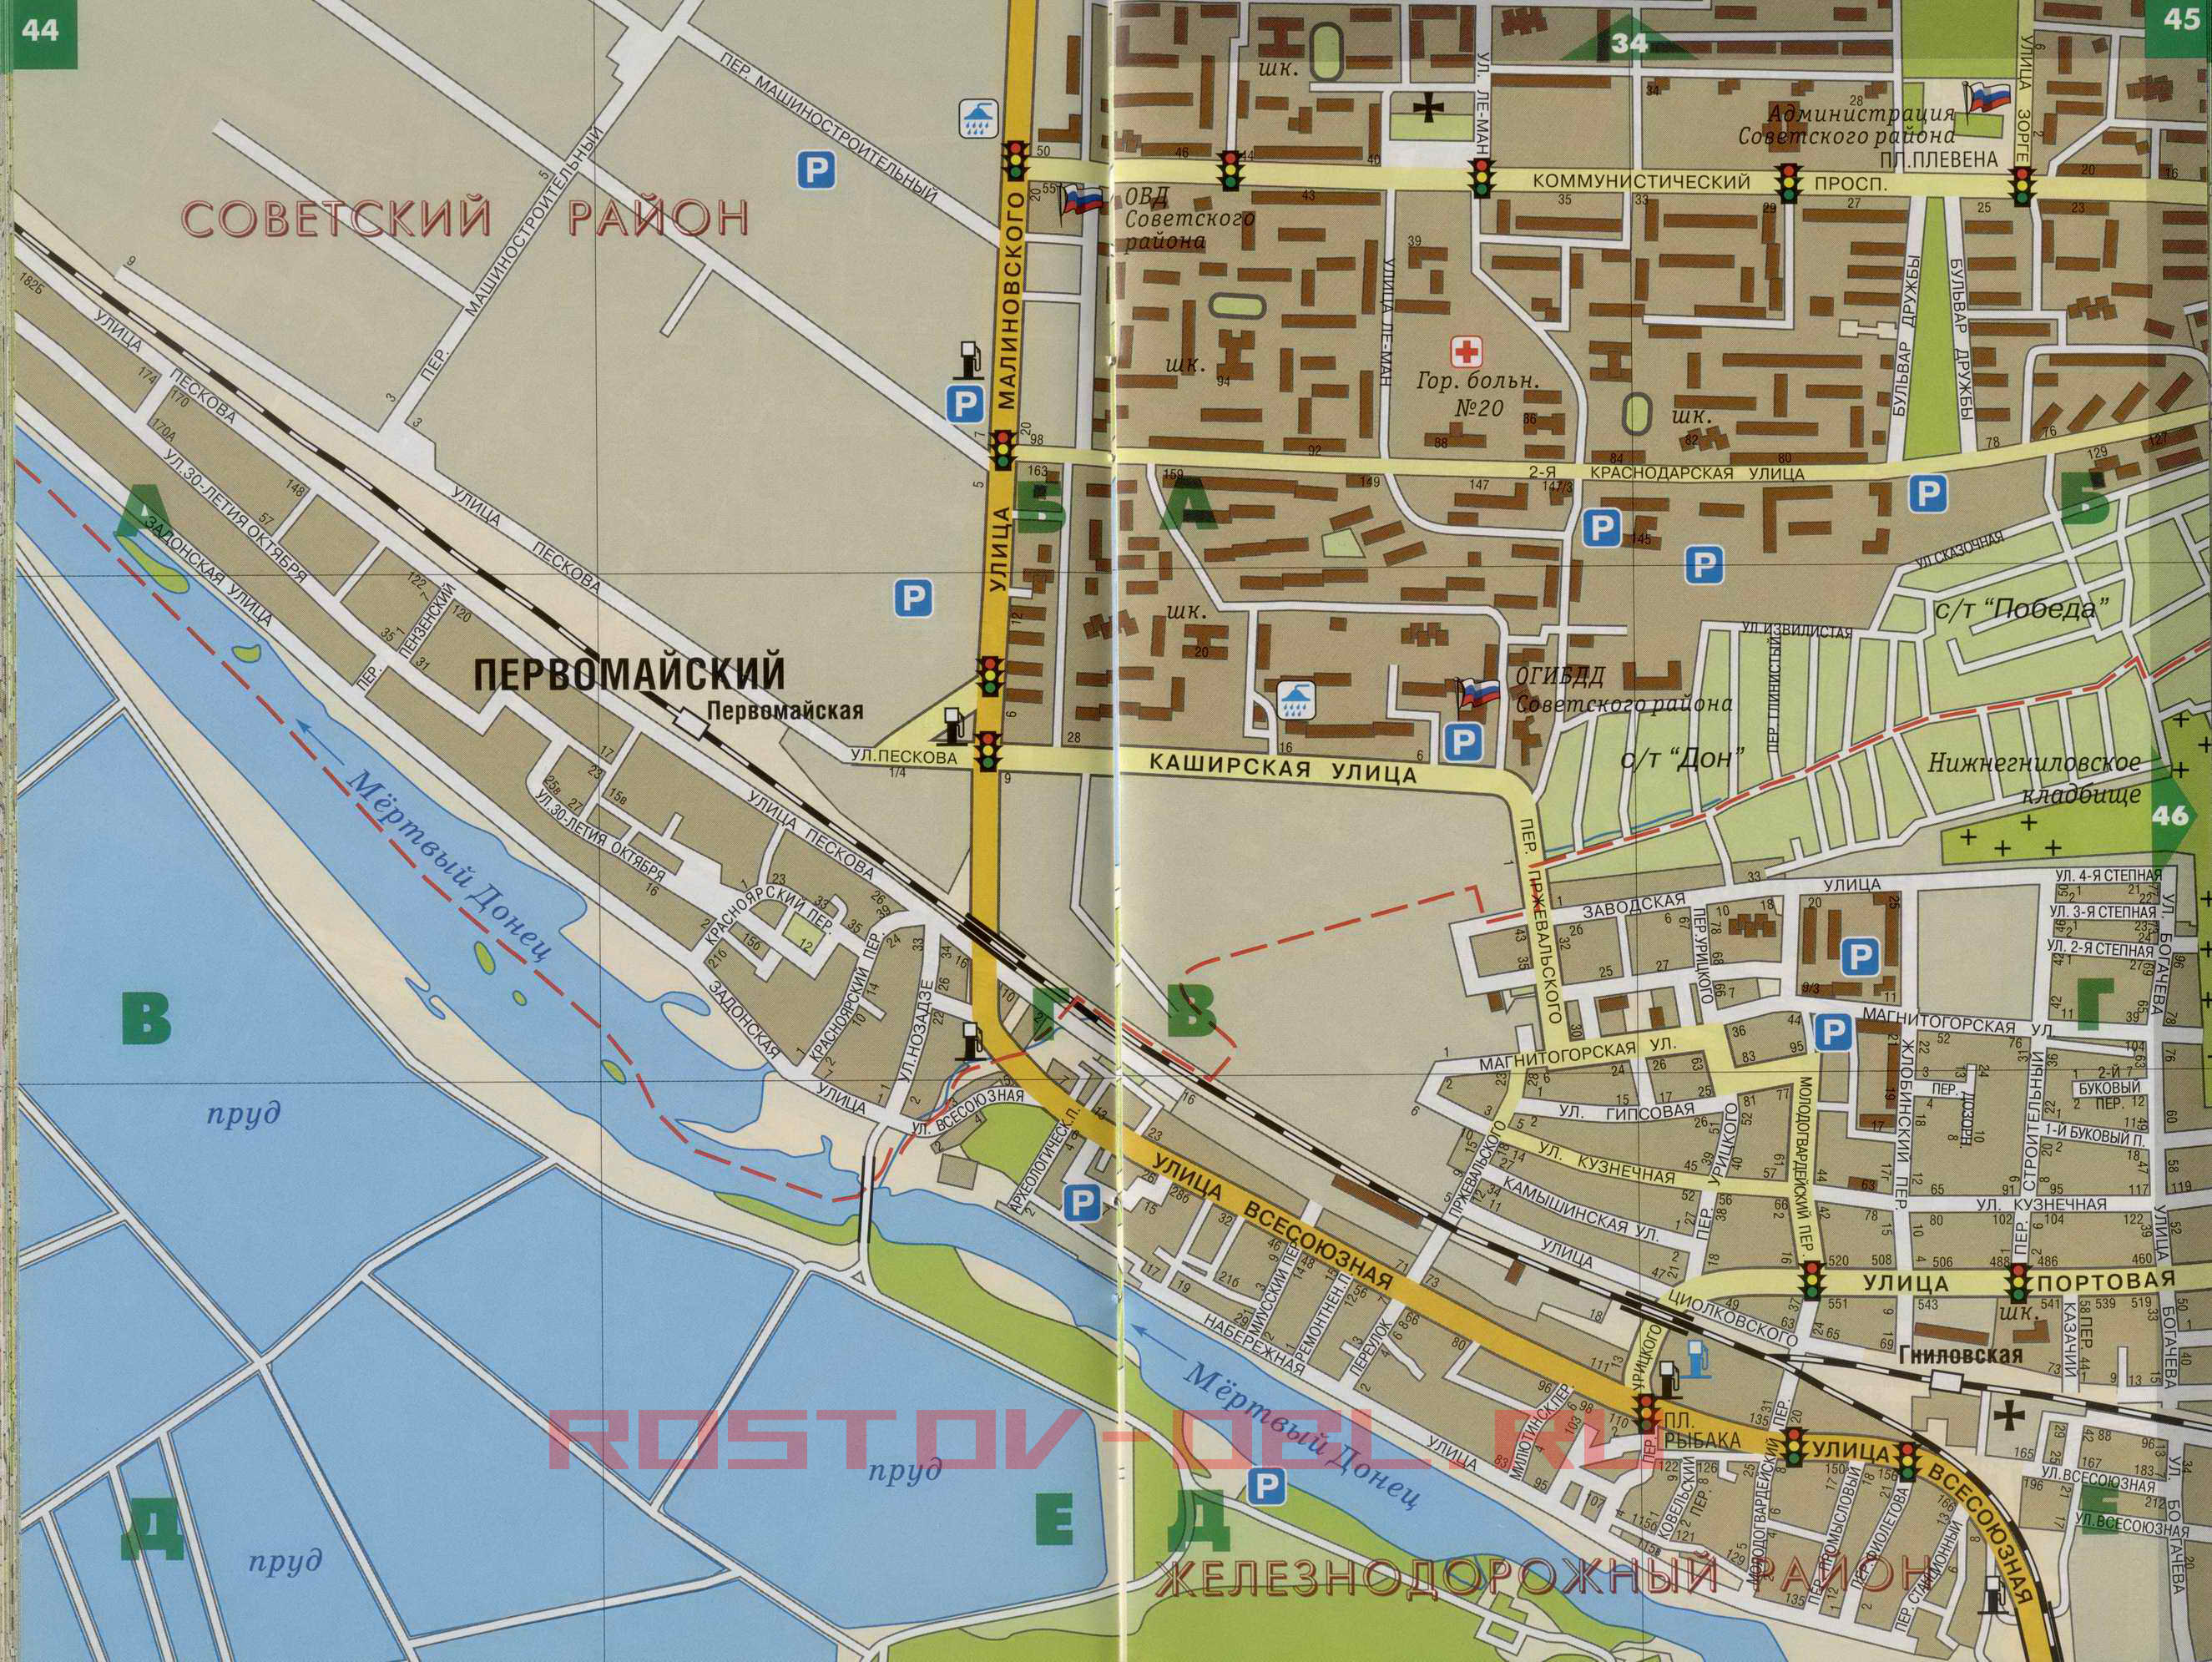 Карта центра Ростова с улицами